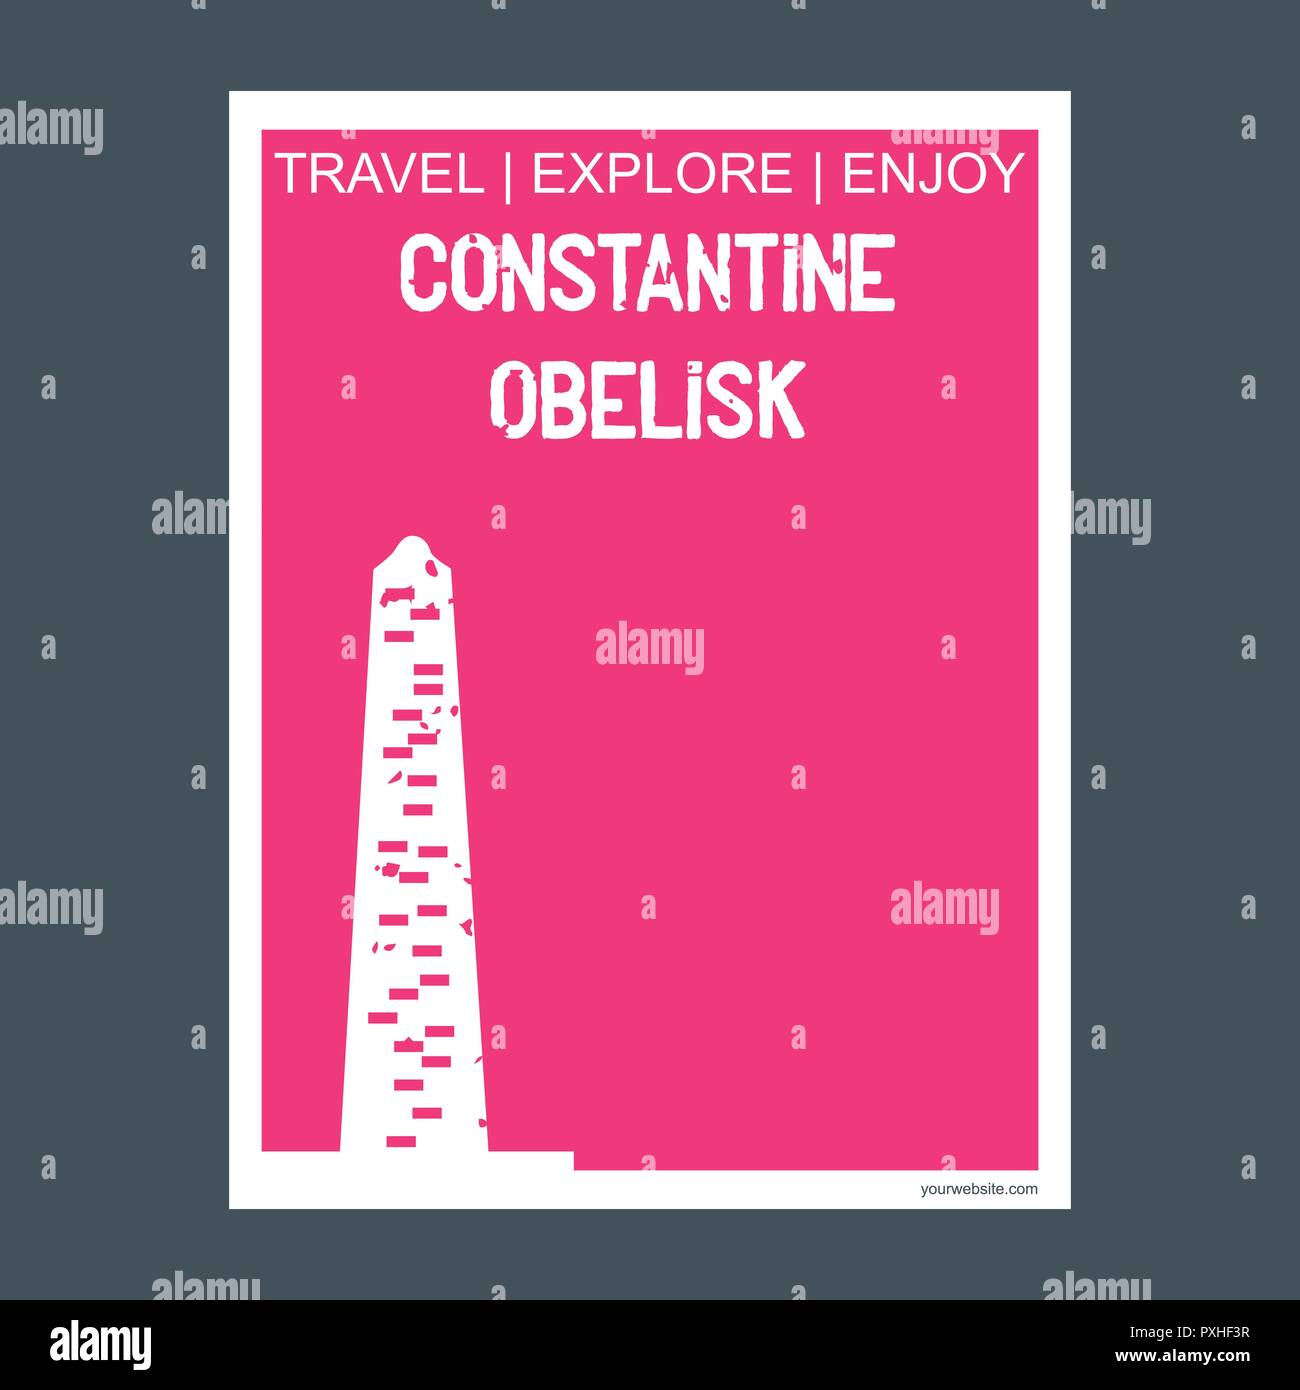 Konstantin Obelisk Istanbul, Türkei Monument, Wahrzeichen Broschüre Flat Style und Typografie Vektor Stock Vektor